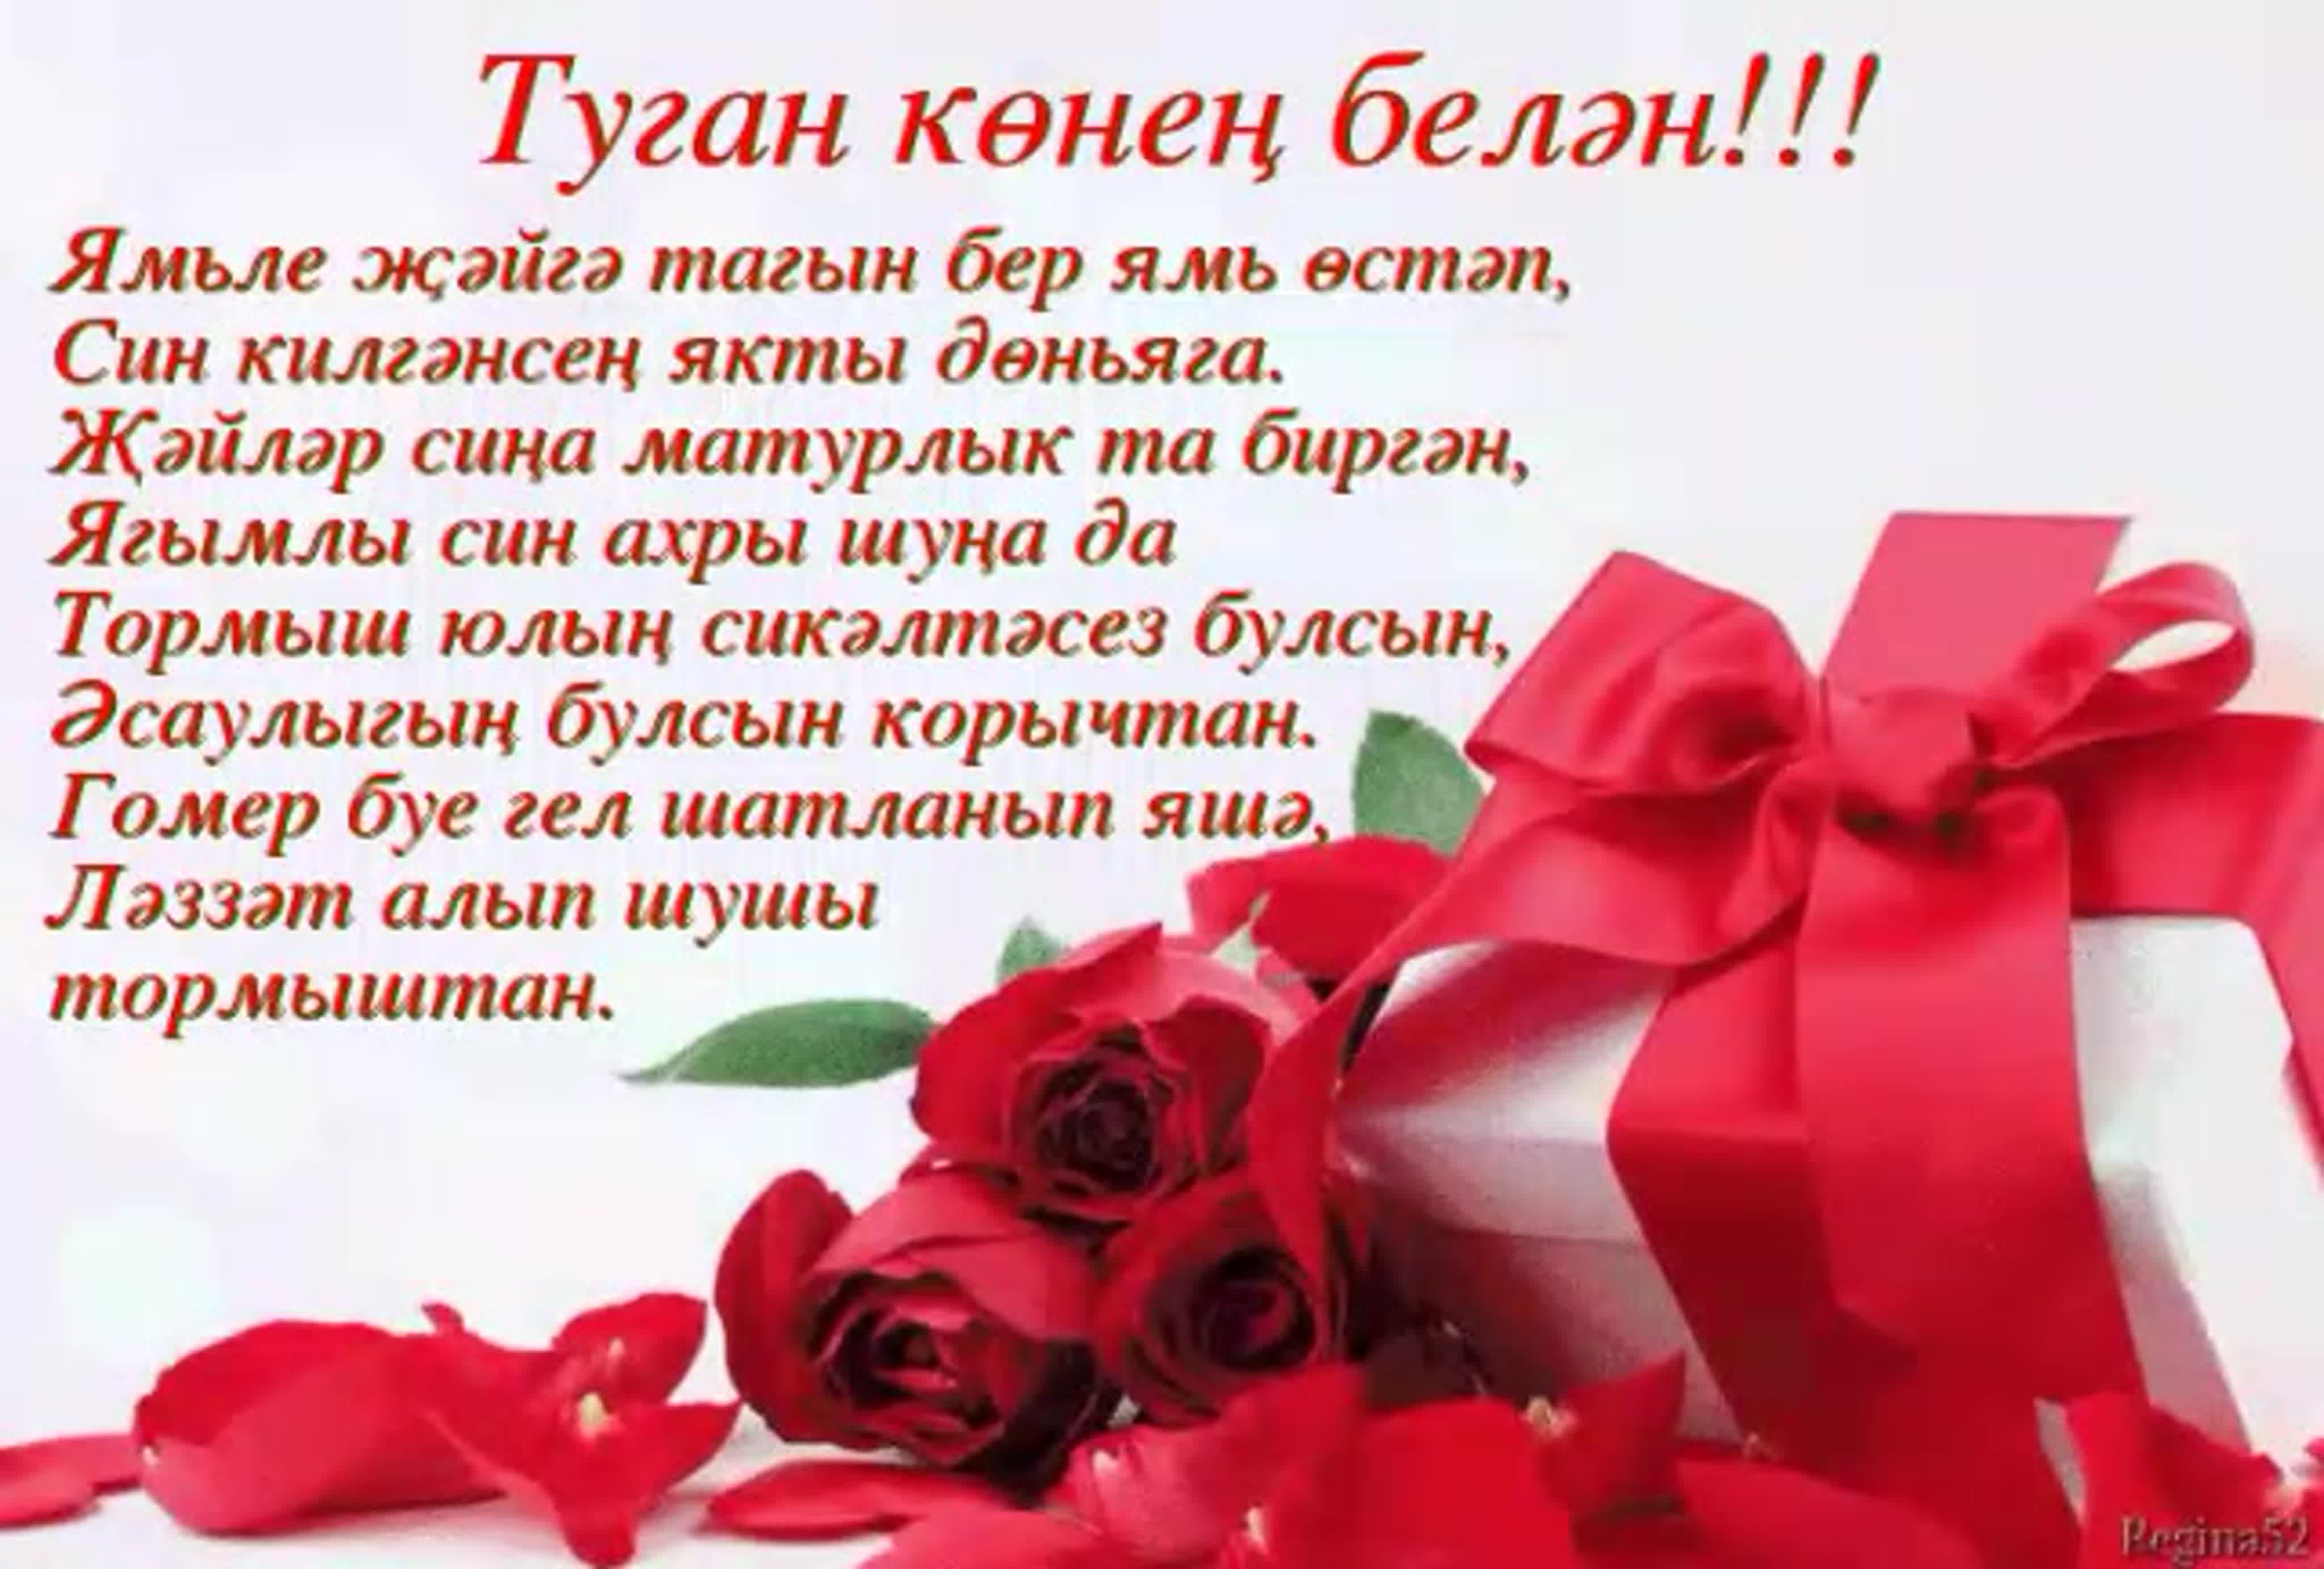 С днем рождения апа татарский. Поздравления с днём с днём рождения на татарском языке. Поздравления с днём рождения женщине на татарском языке. Туган кон. С днём рождения на татарском языке женщине красивые пожеланиями.